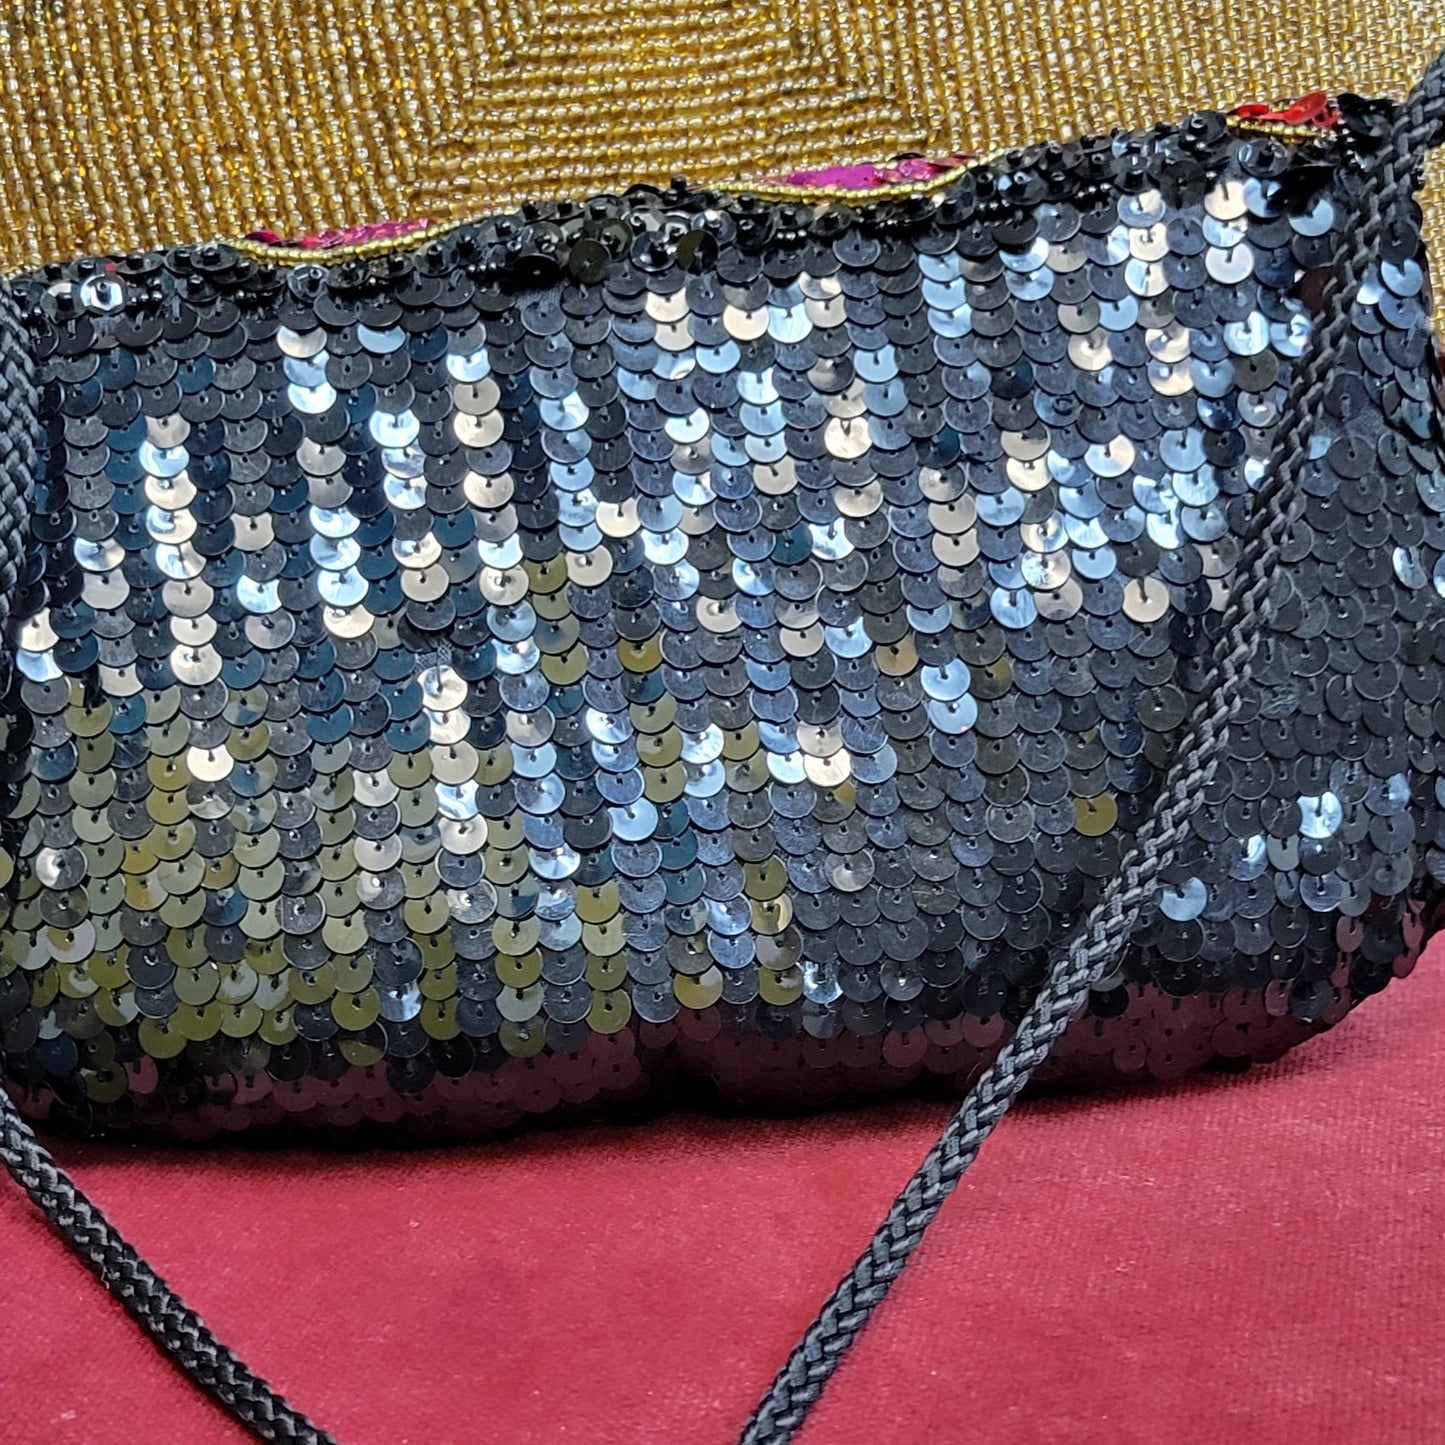 Colorful vintage sequin purse